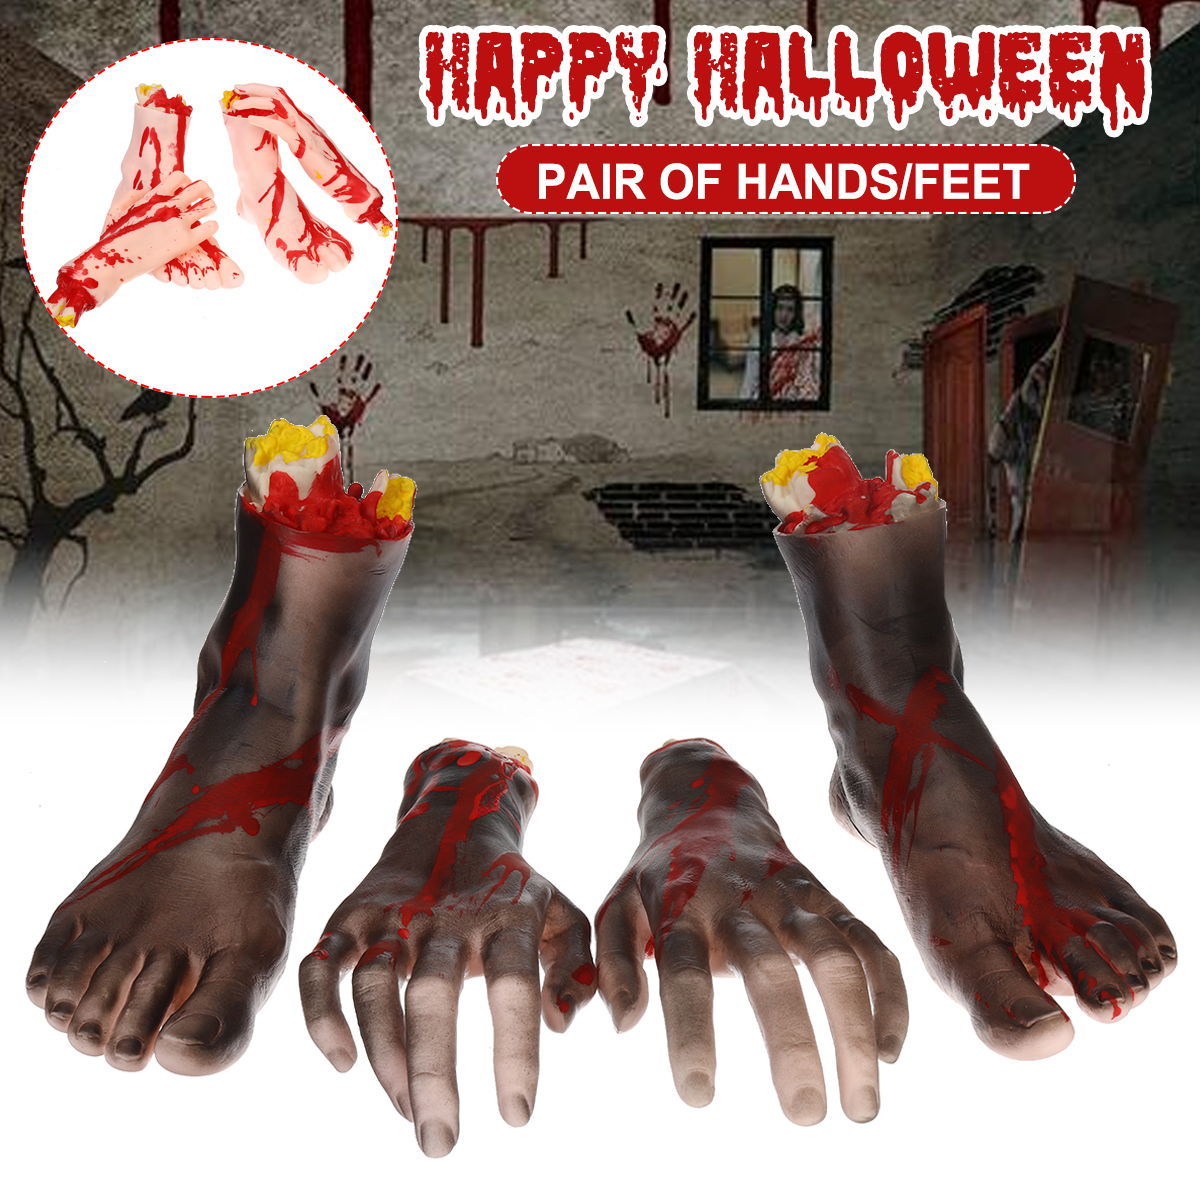 1-Pair-of-HandsFeet-Vinyl-Halloween-Horror-Broken-Hands-Realistic-Scene-Decoration-Props-Tricky-Toy-1751567-2